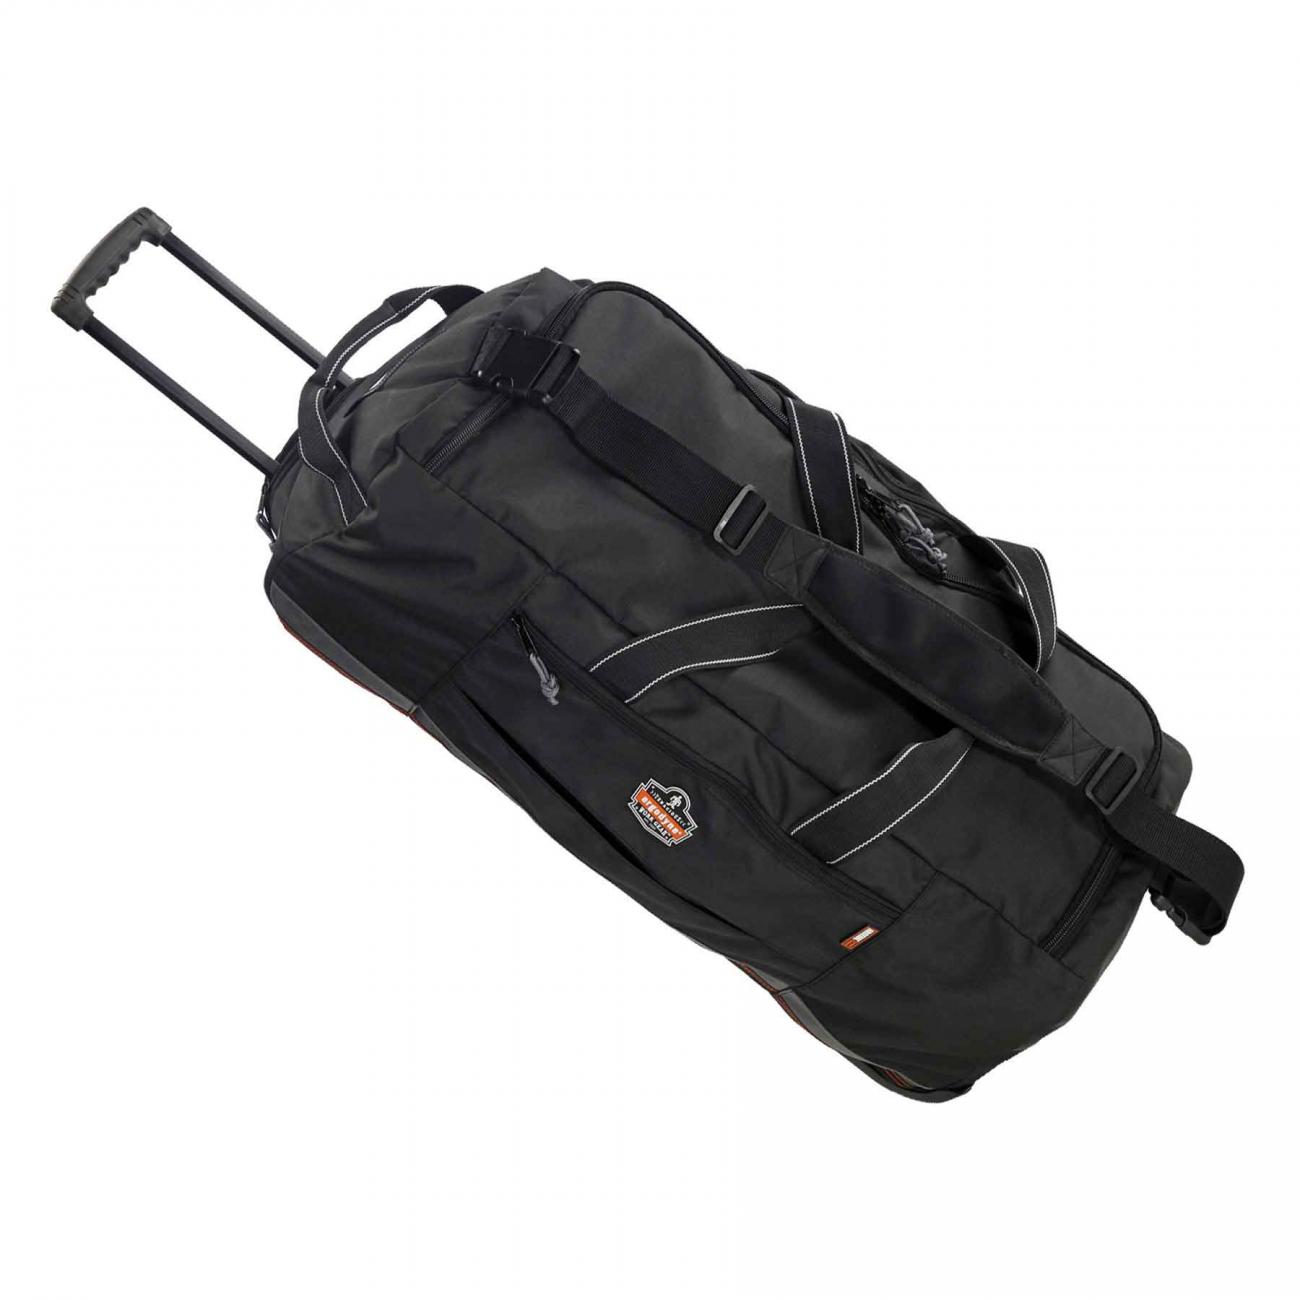 Rolling Gear Duffle Bag, Large | Ergodyne